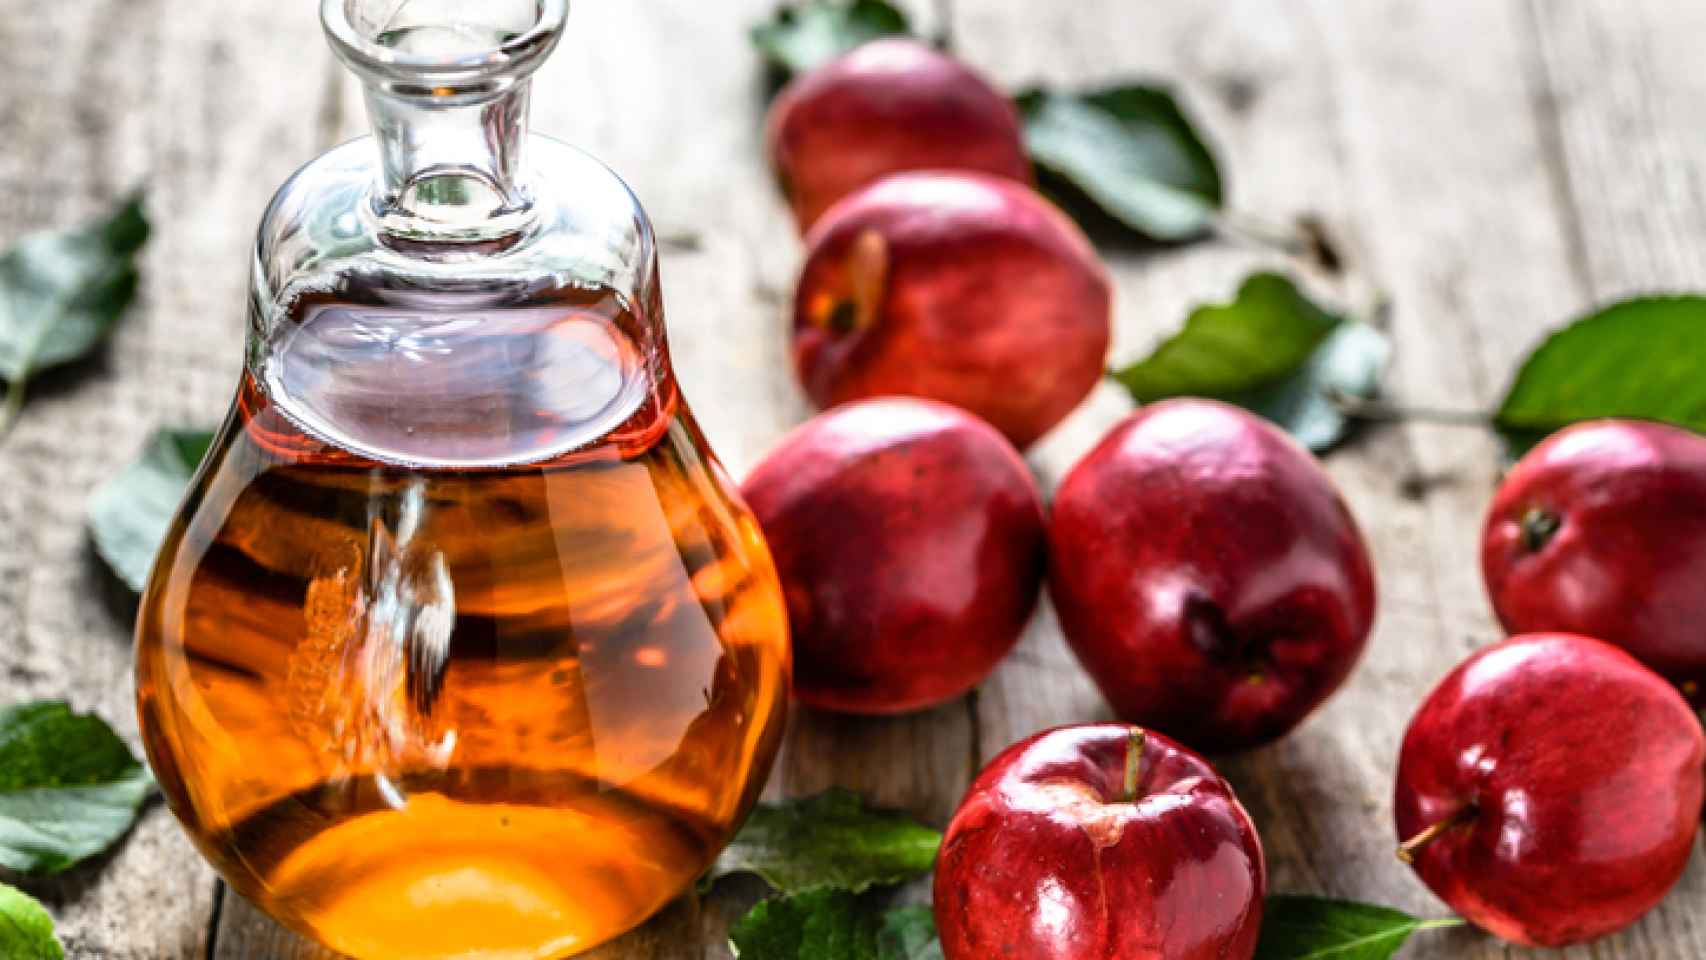 Vinagre de manzana para eliminar arrugas (receta)